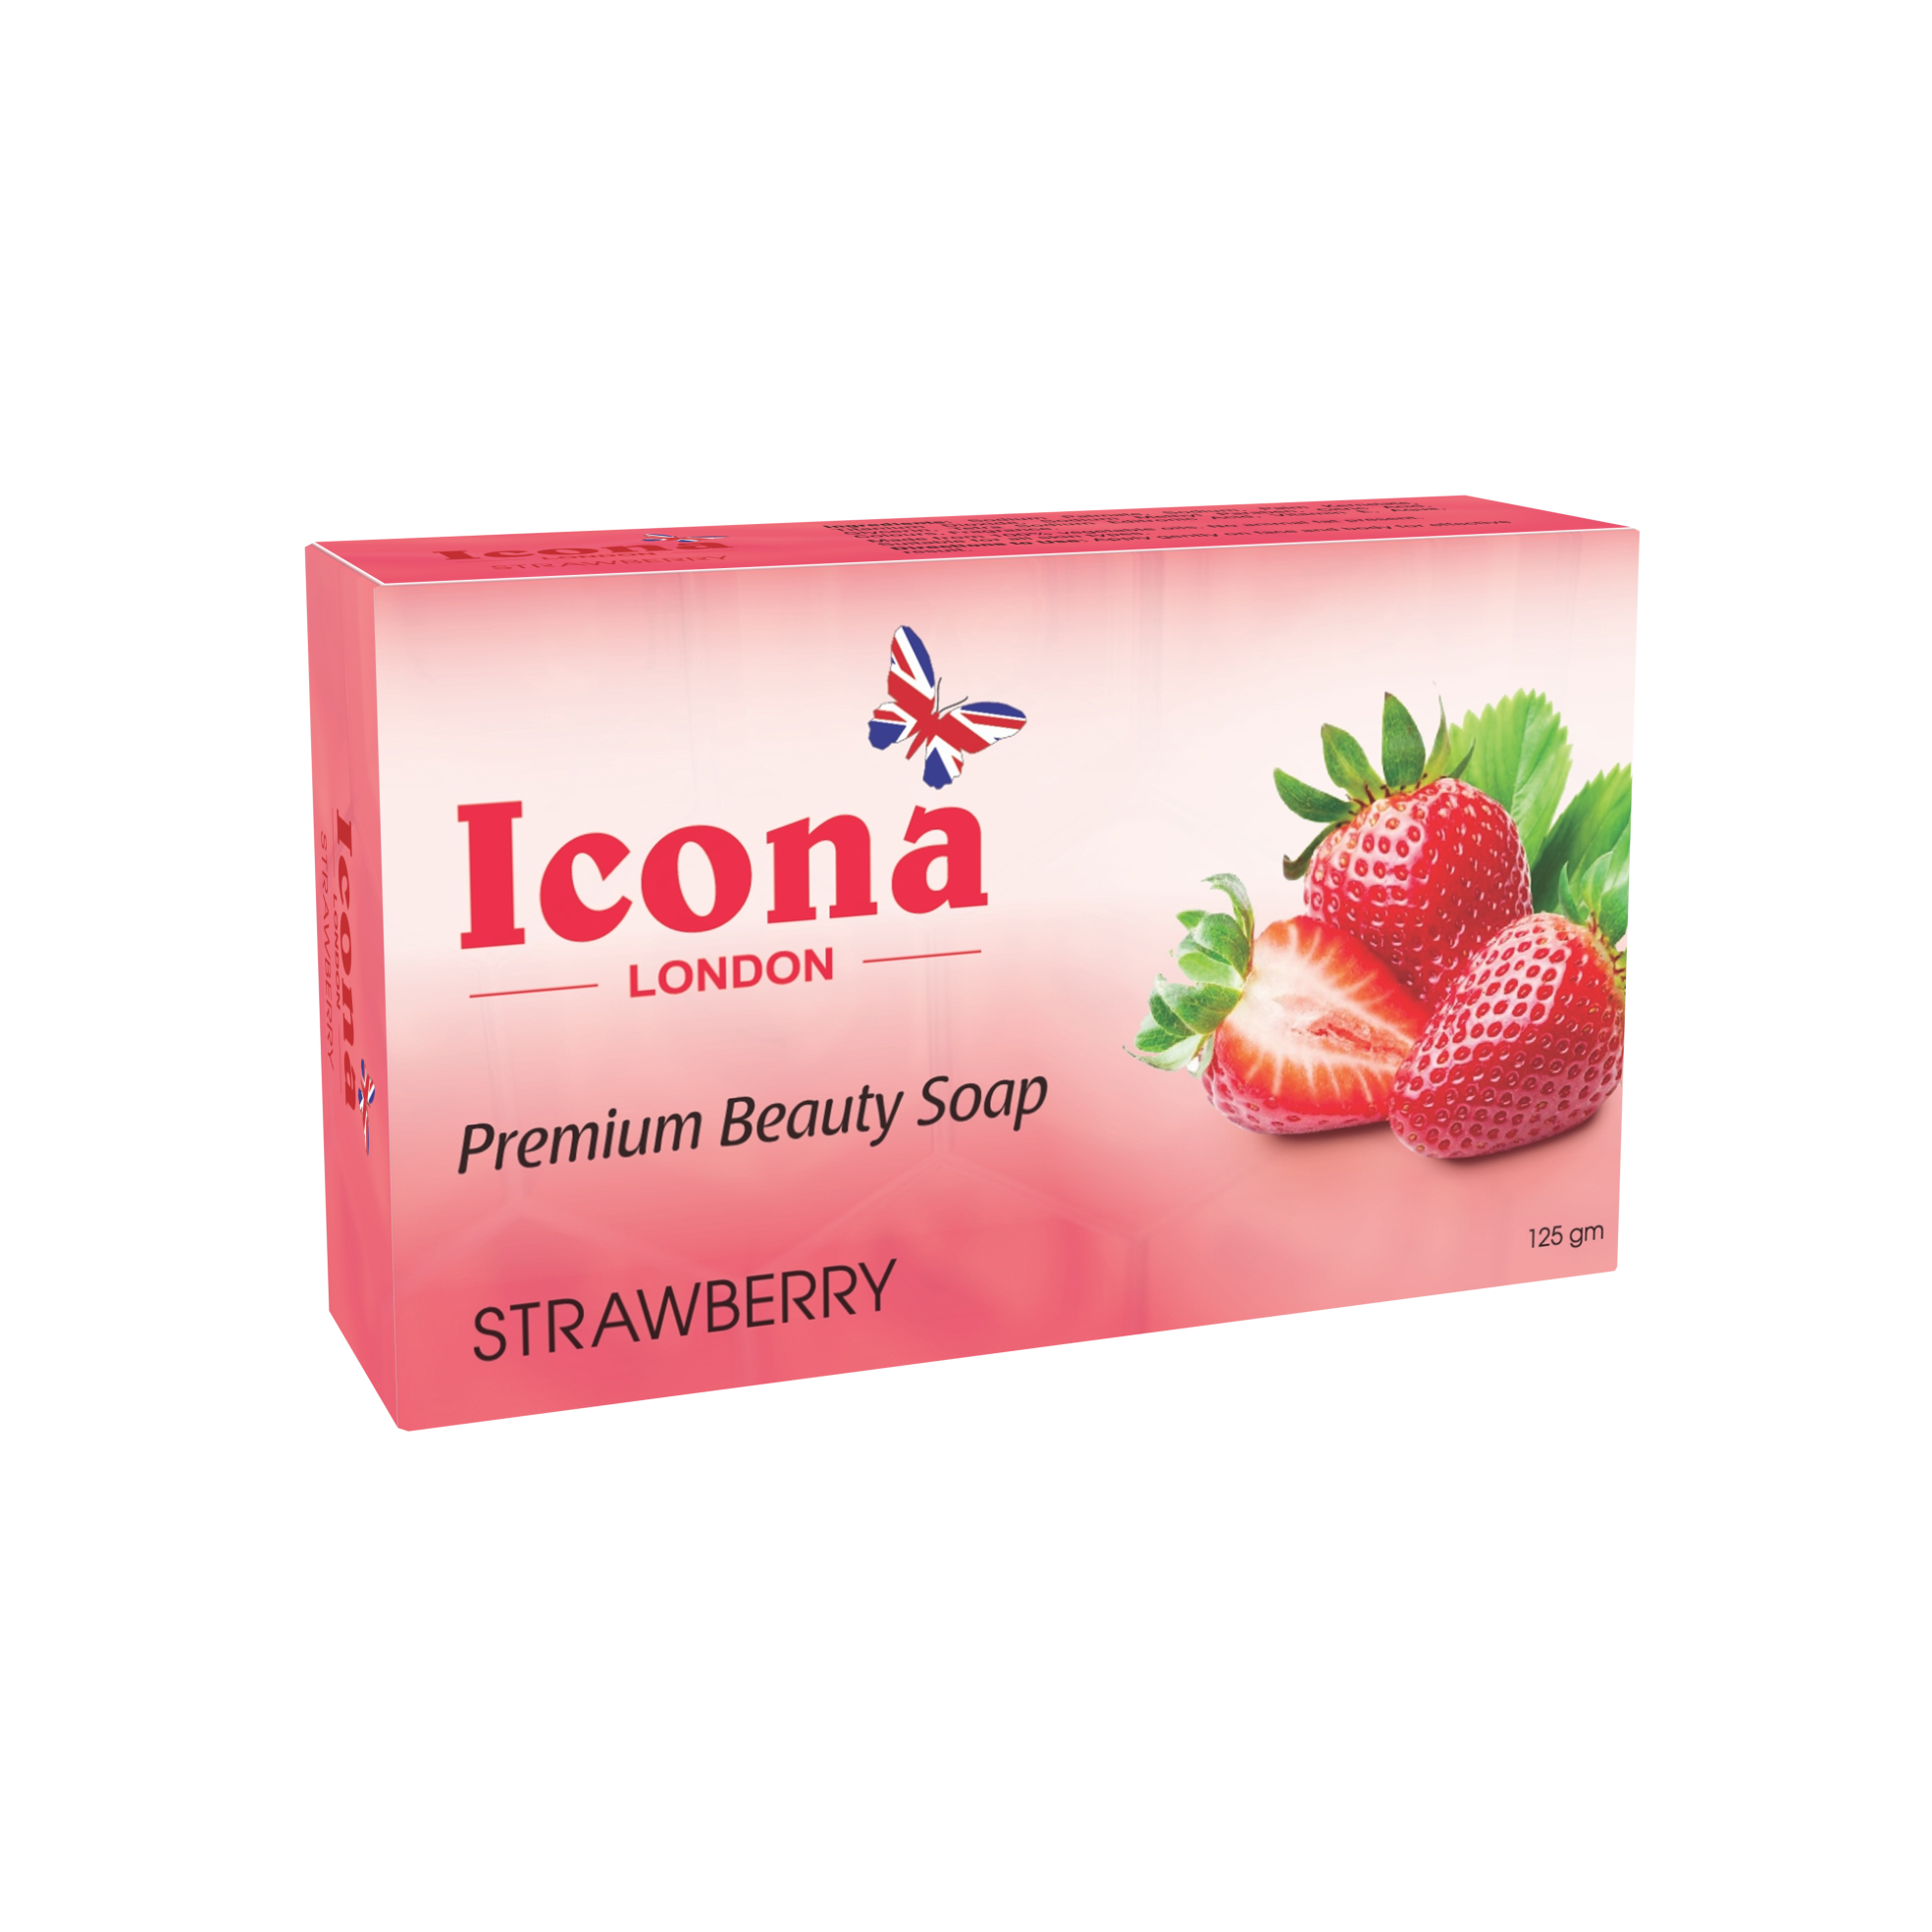 Icona London Beauty Soap (Strawberry)